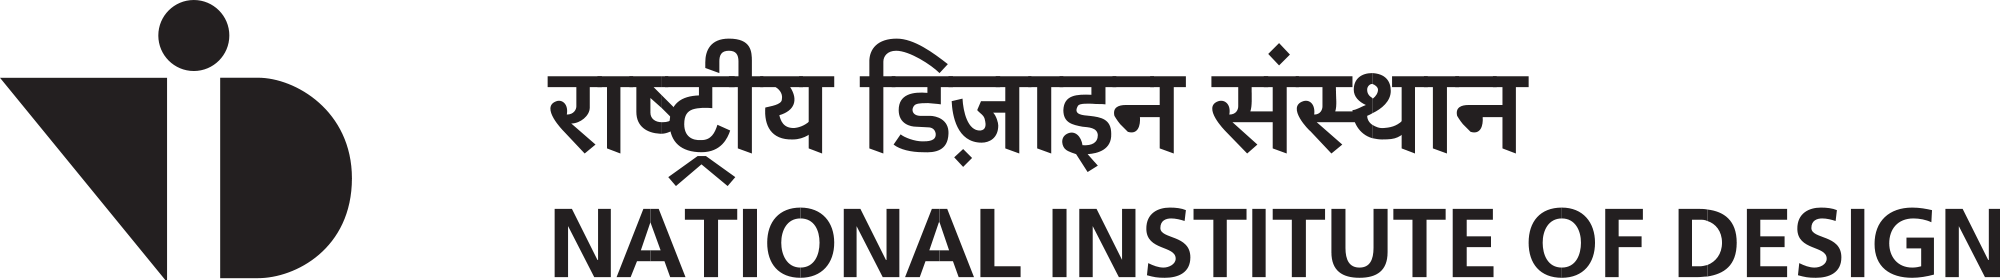 Nid Logo - National Institute of Design logo.svg